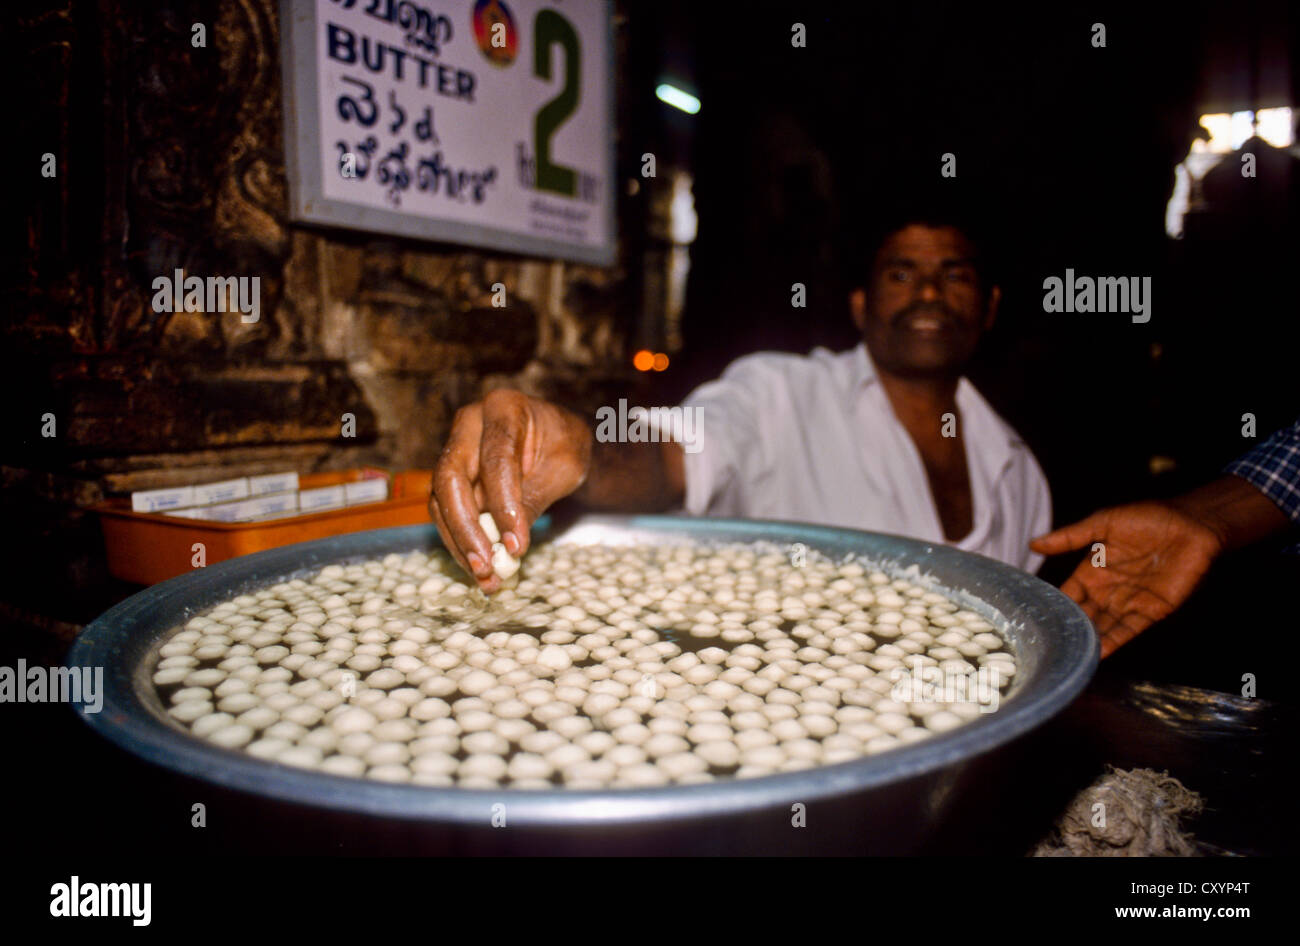 Pour« Butterballs » la vente comme offrandes aux dieux, en Meenakshi-Sundareswar Temple de Madurai, Madurai, Tamil Nadu, Inde, Asie Banque D'Images